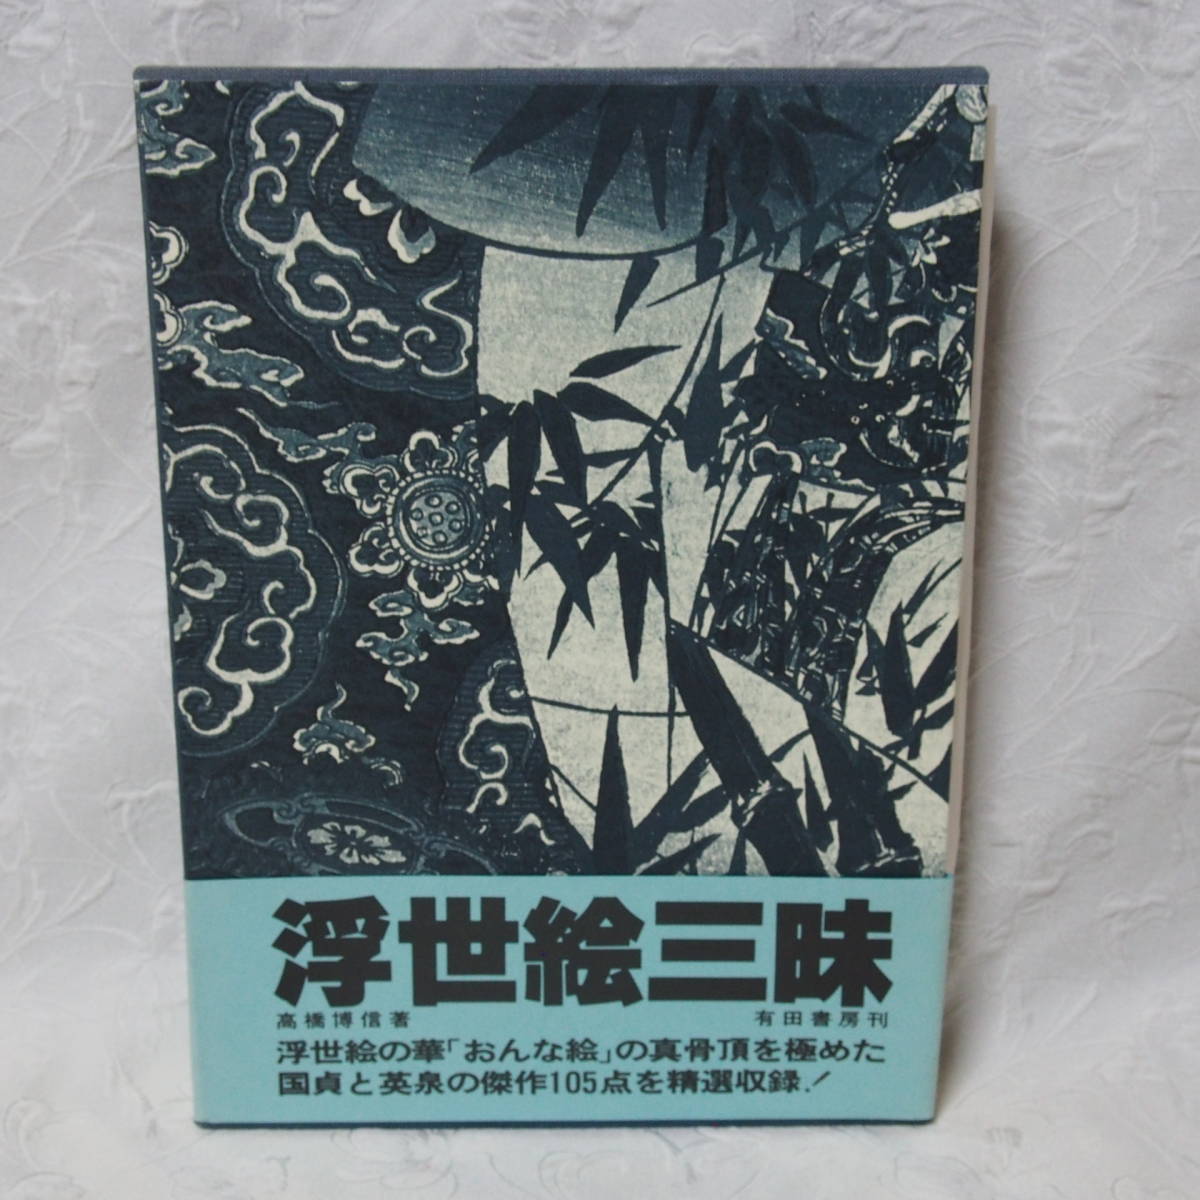 قيّم, نادر, والطبعة تحصيلها! كتاب عالي الجودة Ukiyo-e Zanmai / Hironobu Takahashi / نُشر في 15 ديسمبر, 1980 (السعر في ذلك الوقت:, 5000 ين), تلوين, أوكييو إي, مطبوعات, صورة لامرأة جميلة